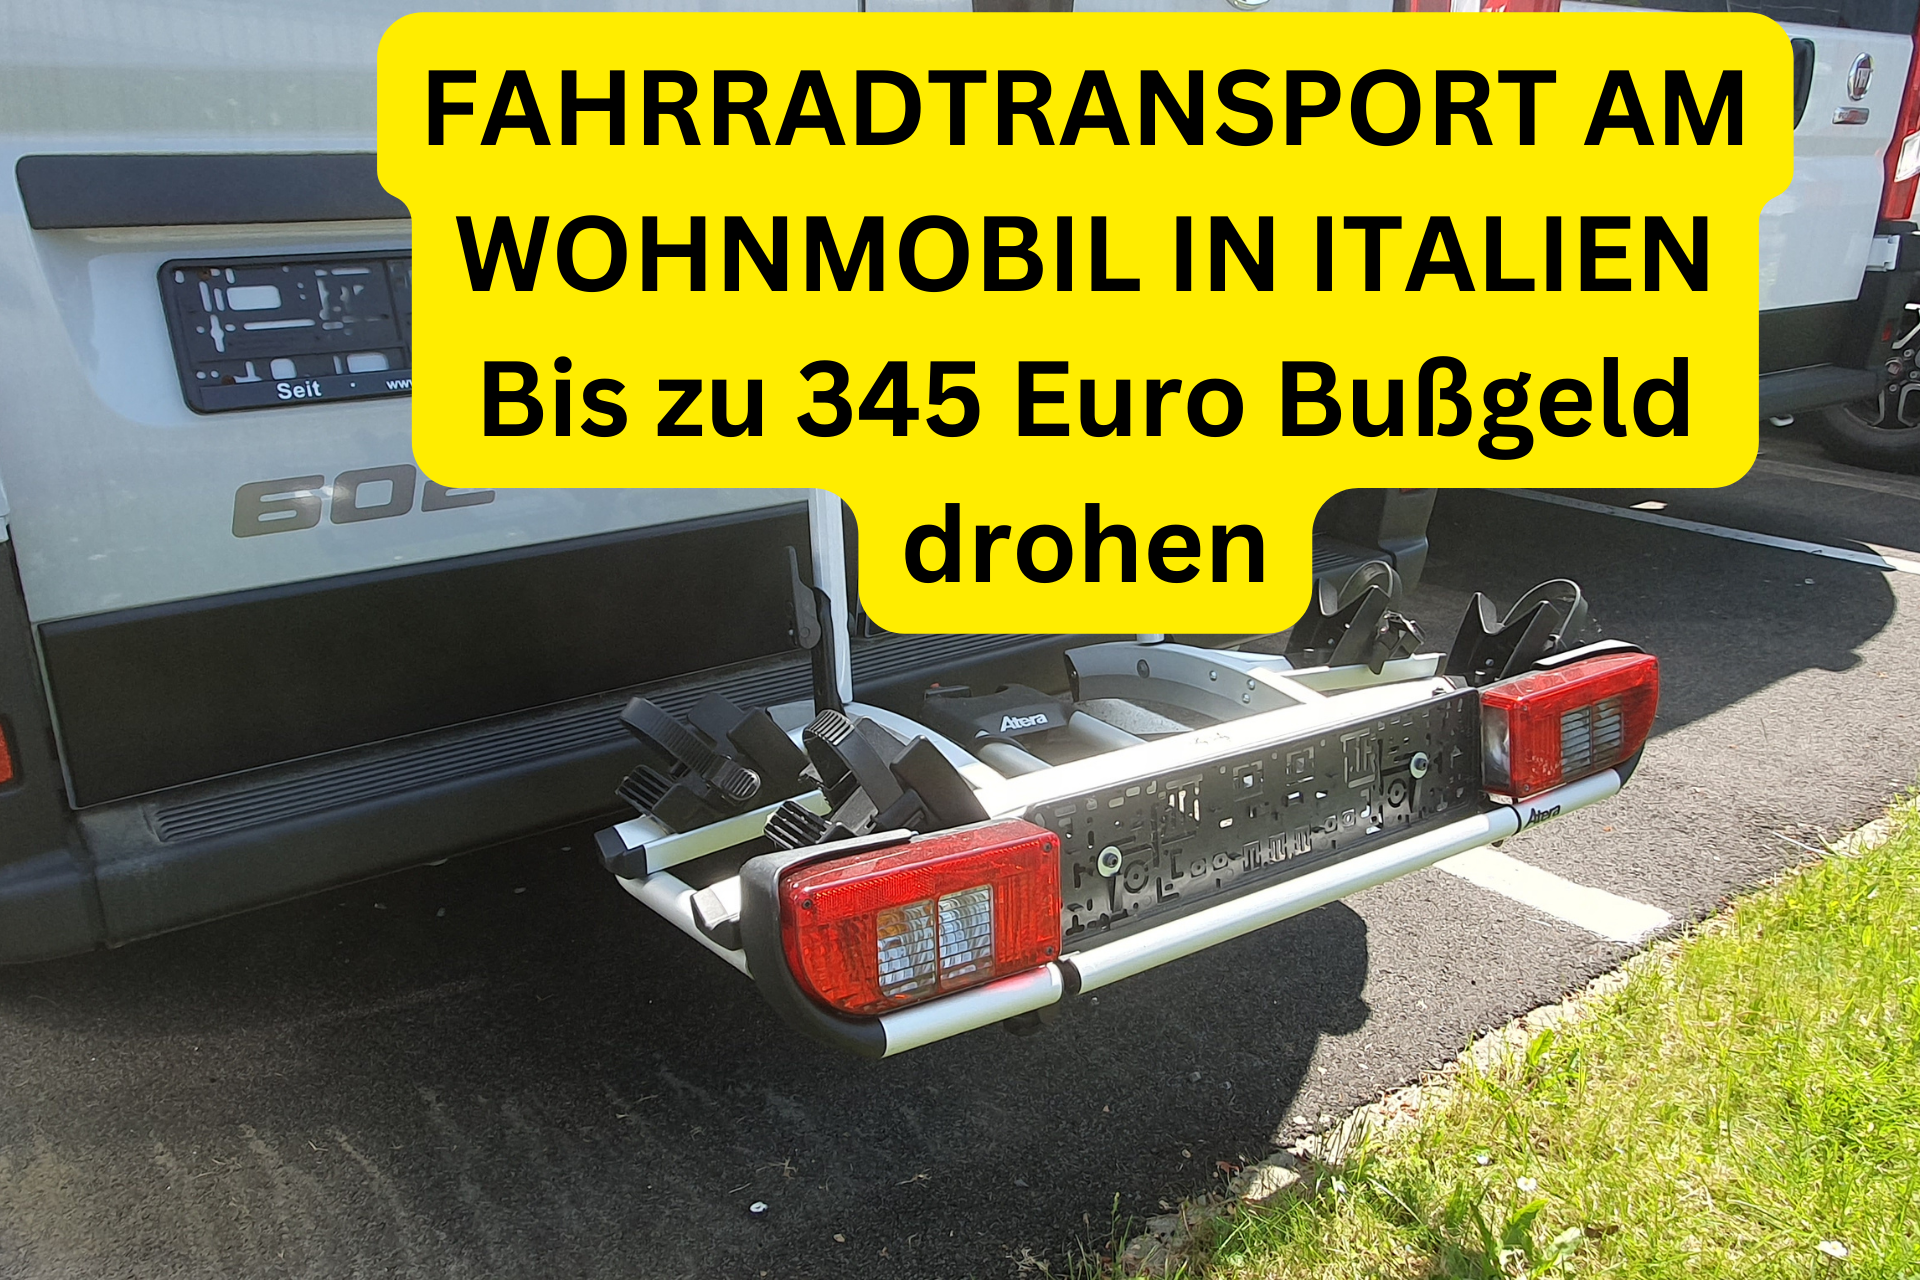 FAHRRADTRANSPORT AM WOHNMOBIL IN ITALIEN Bis zu 345 Euro Bußgeld drohen